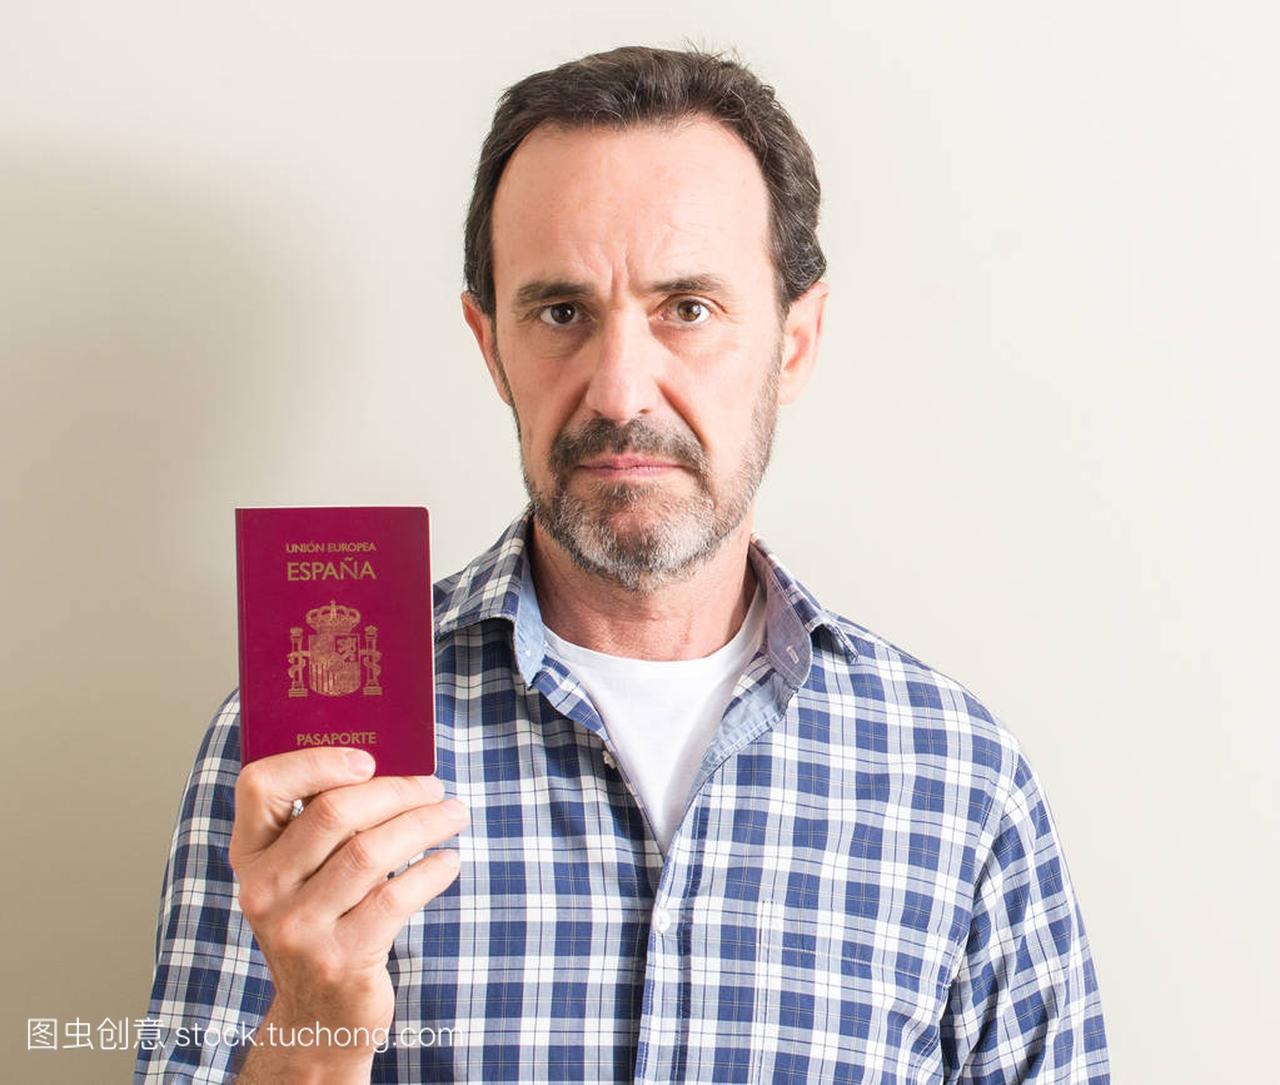 持有西班牙护照的资深男士, 自信地表达了对聪